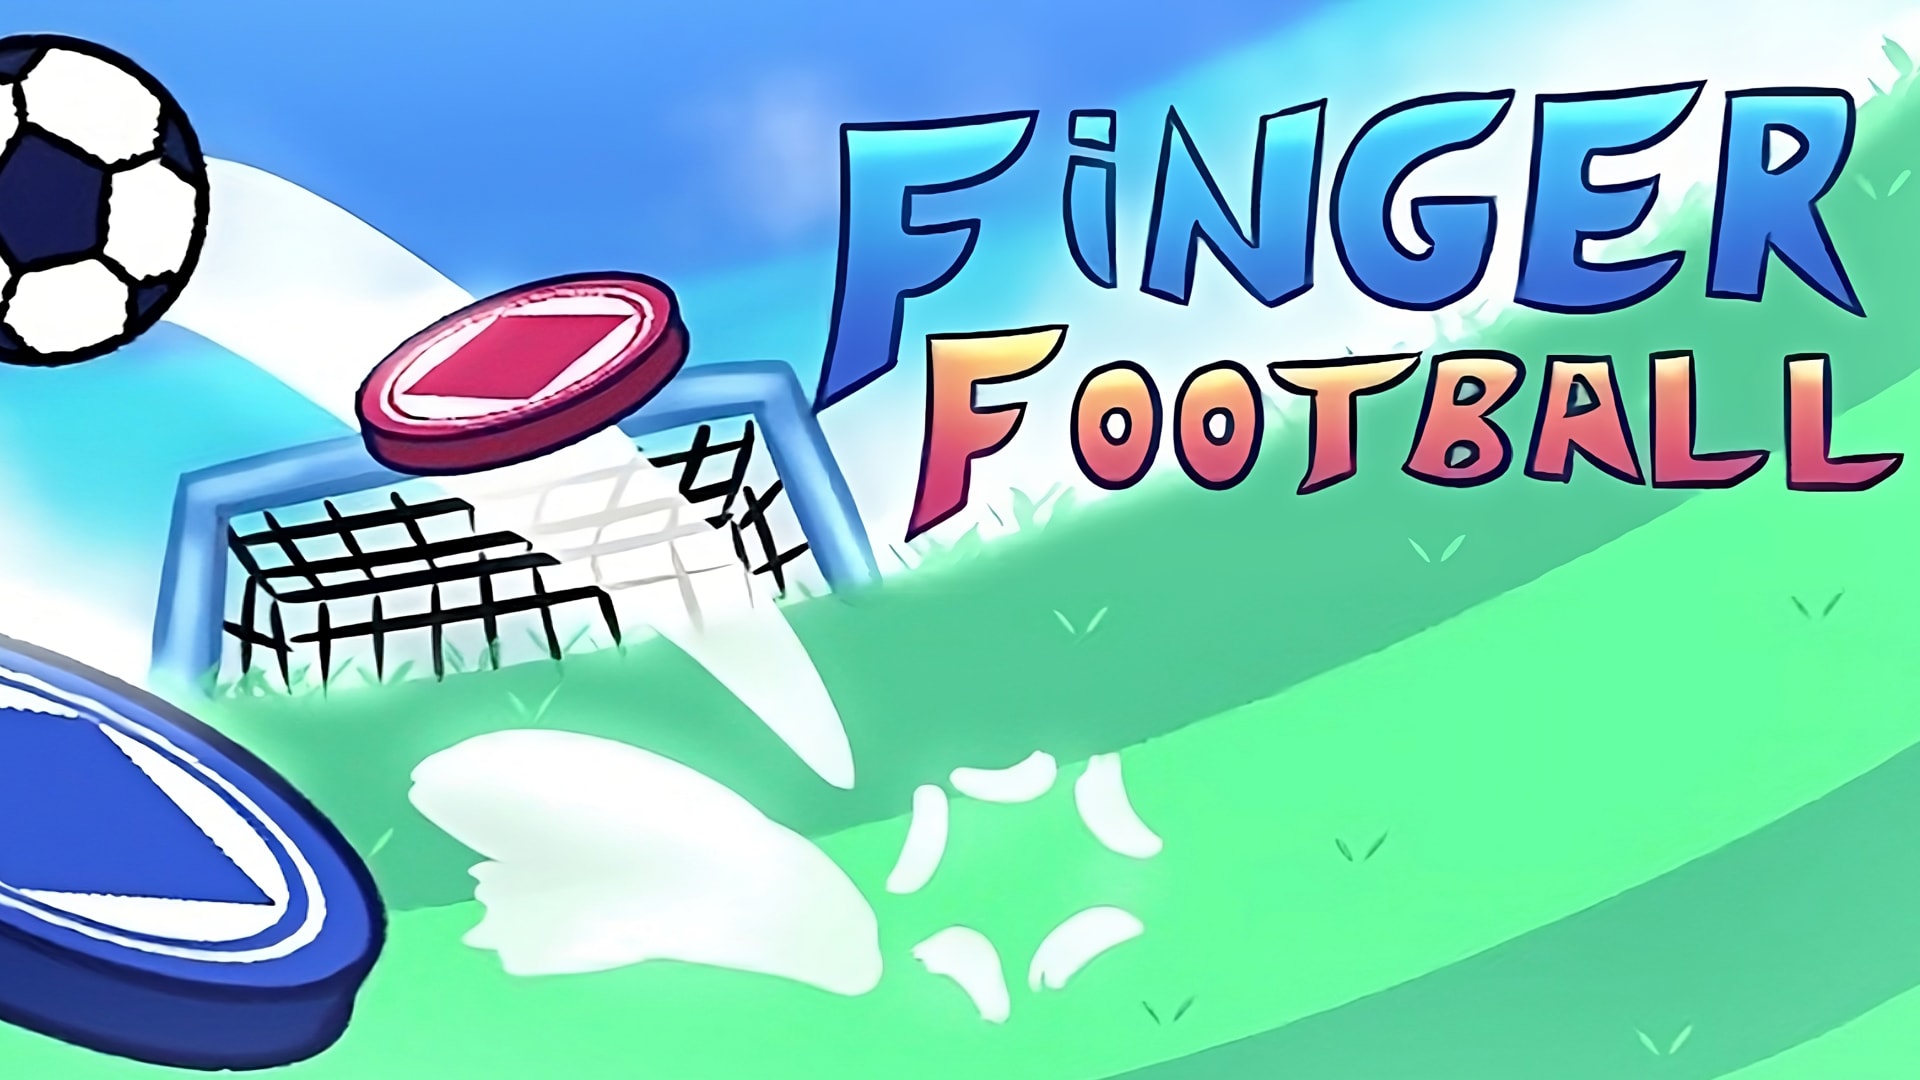 Finger Football: Goal in One